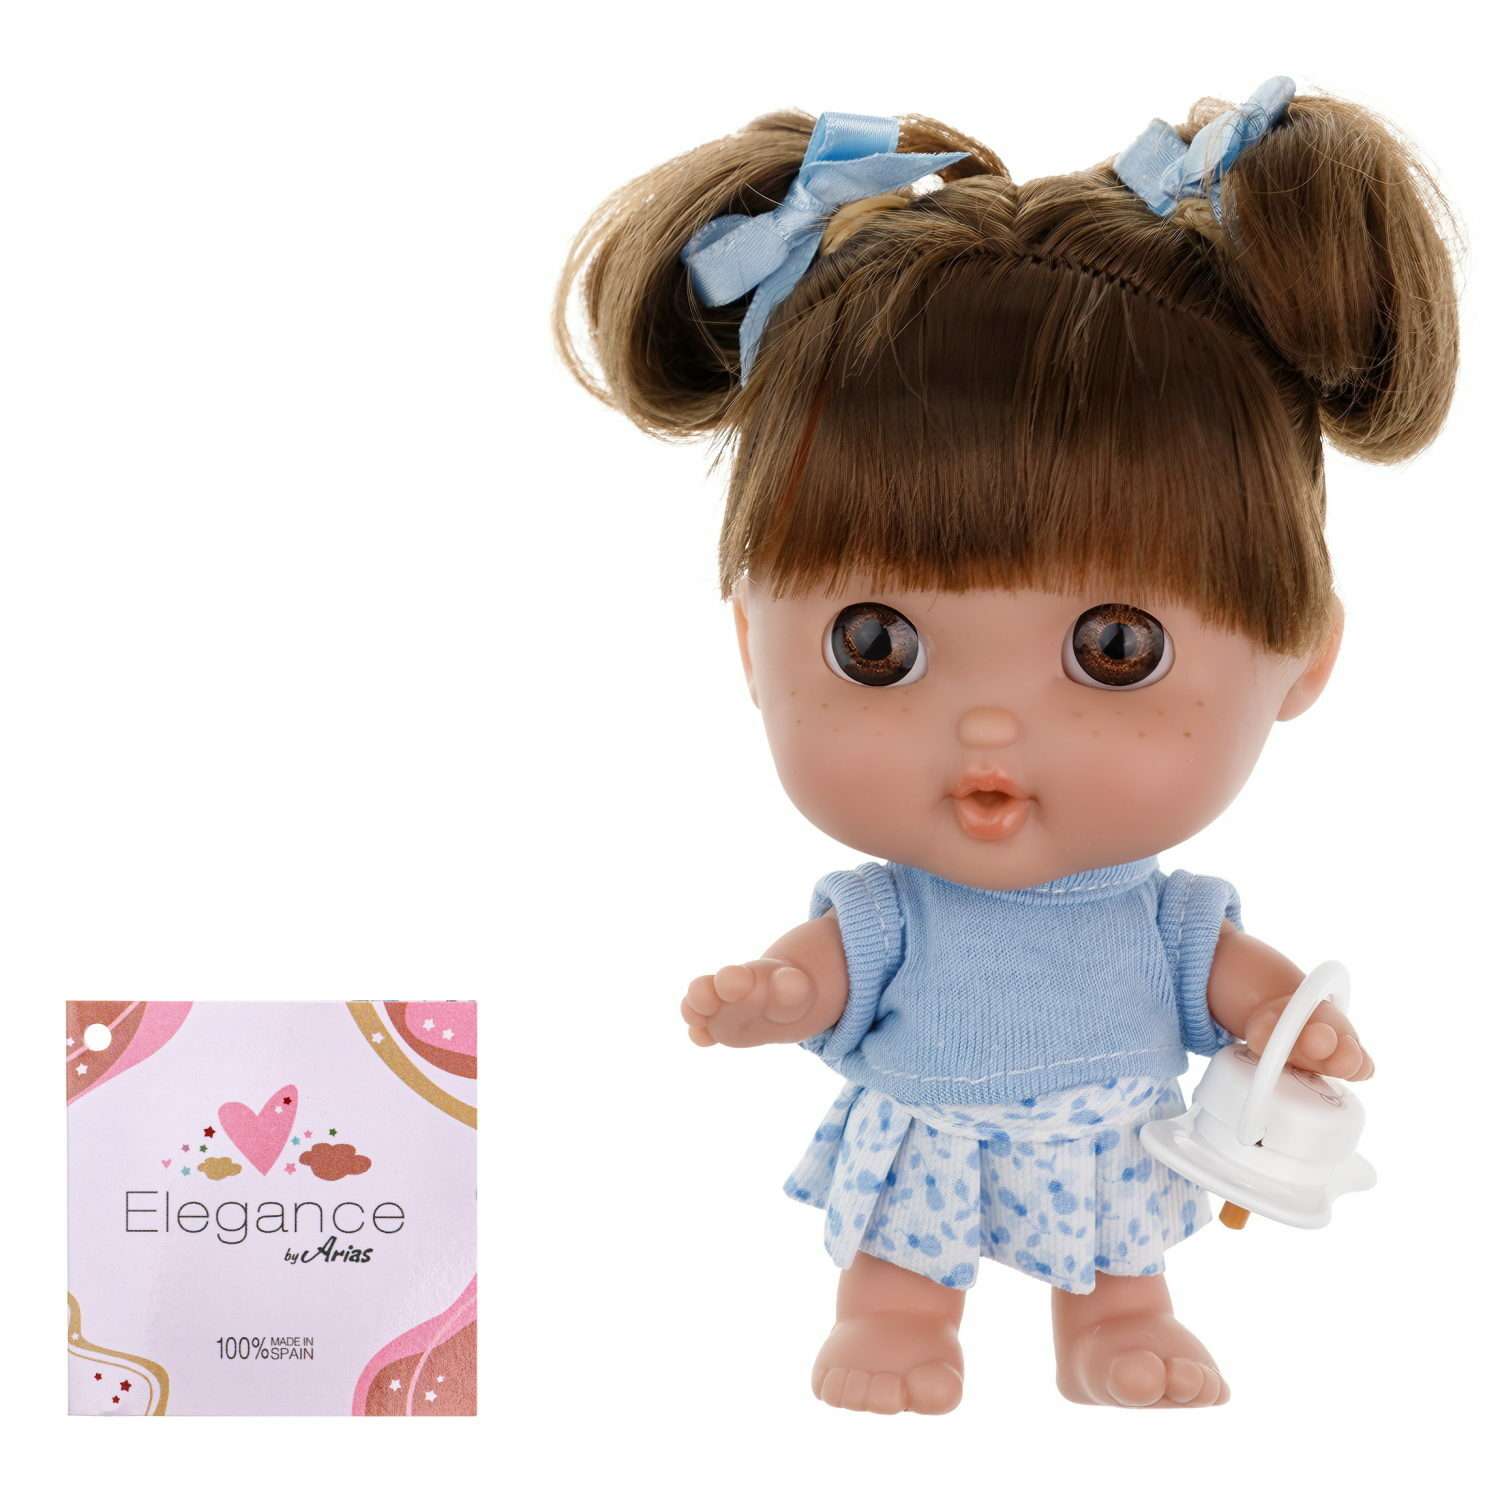 Кукла Arias elegance pequitas с каштановыми волосами и карими глазами c cоской в голубой юбке 17 см Т19780-9 - фото 1